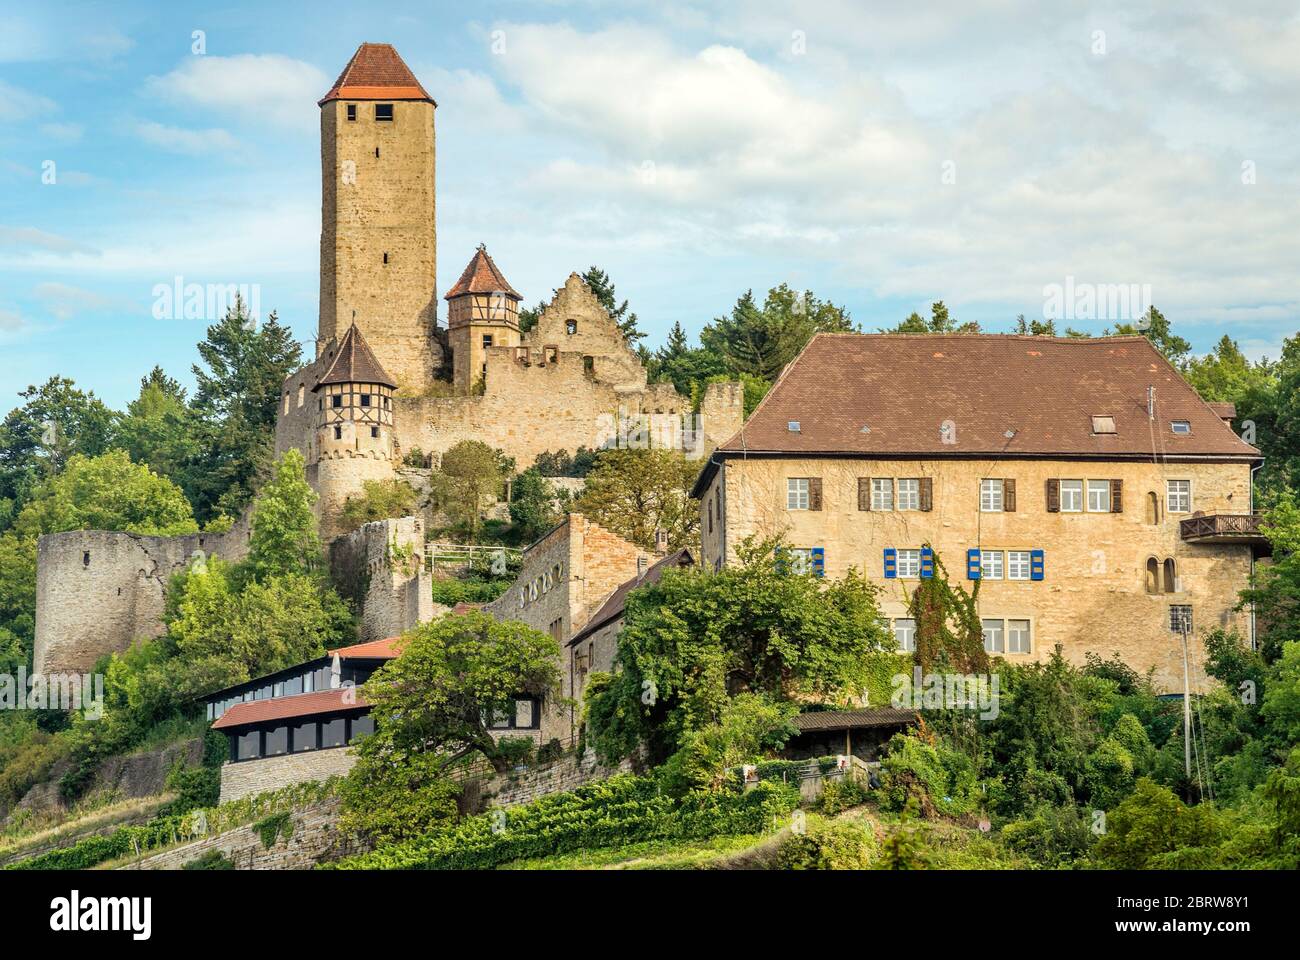 Castle Hornberg in Neckarzimmern at the River Neckar, Baden Wuertemberg, Germany Stock Photo